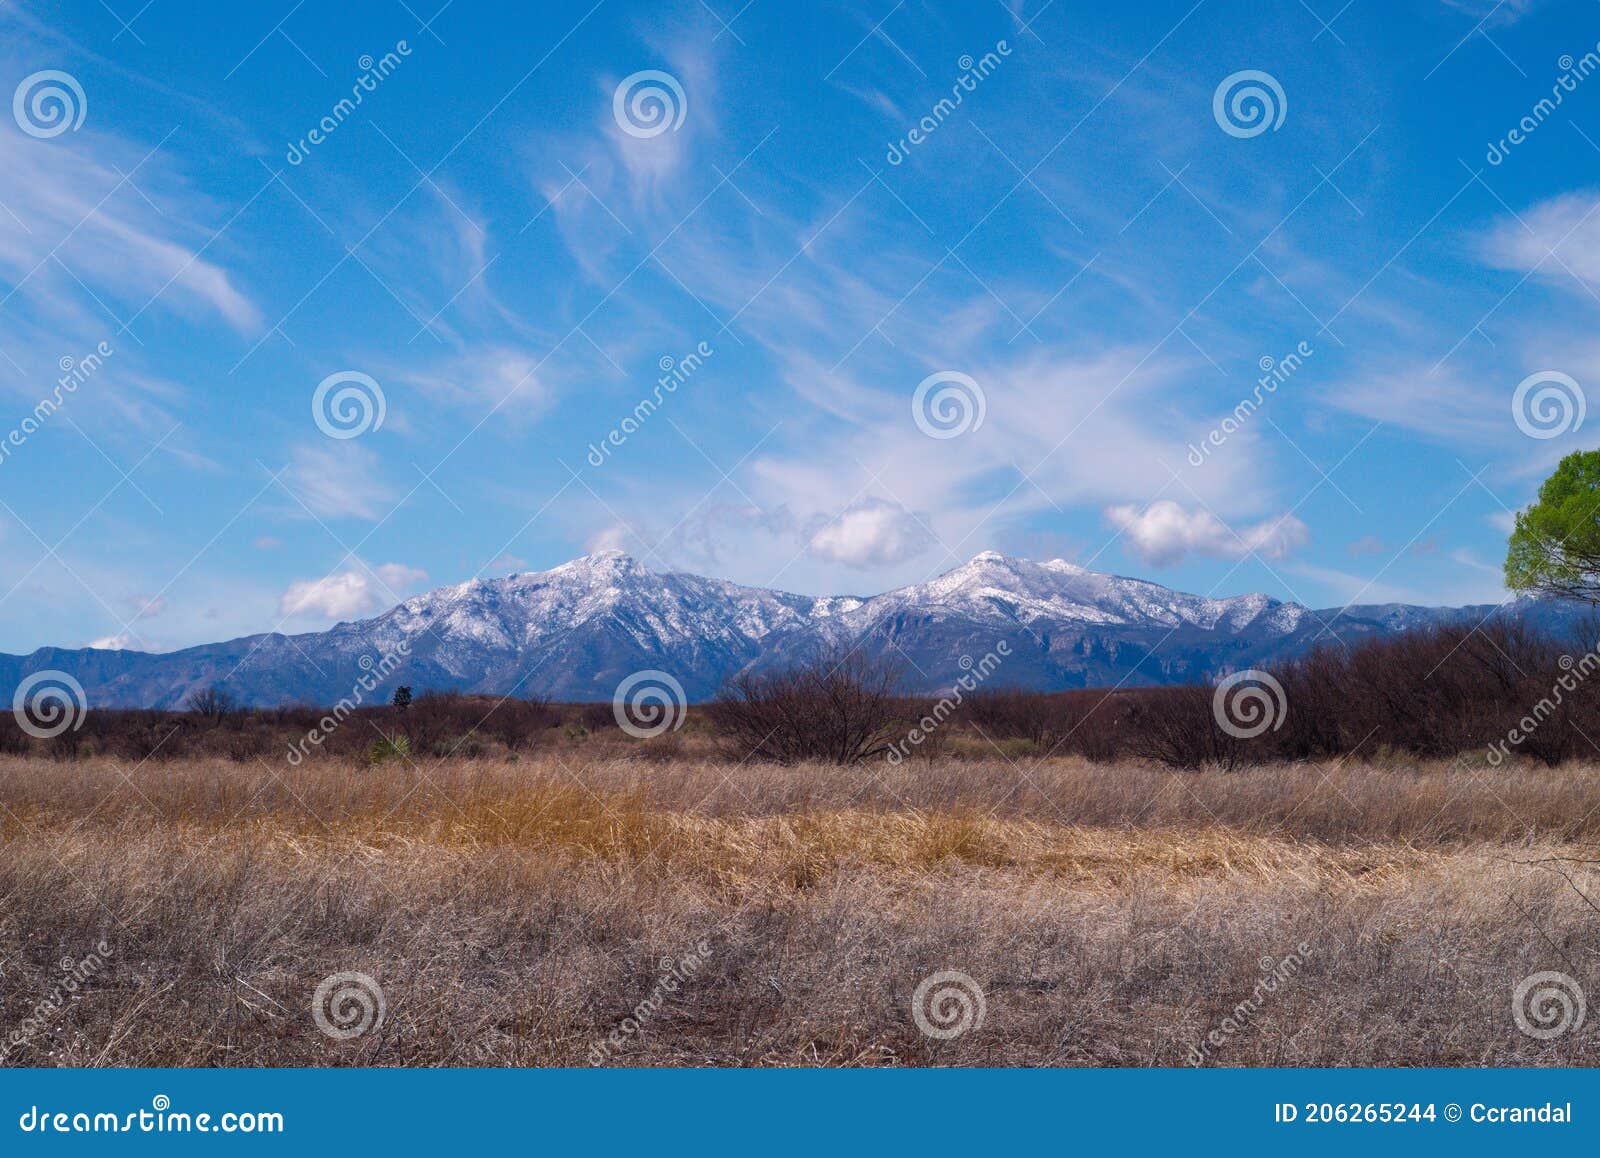 527 huachuca mountains snow tops